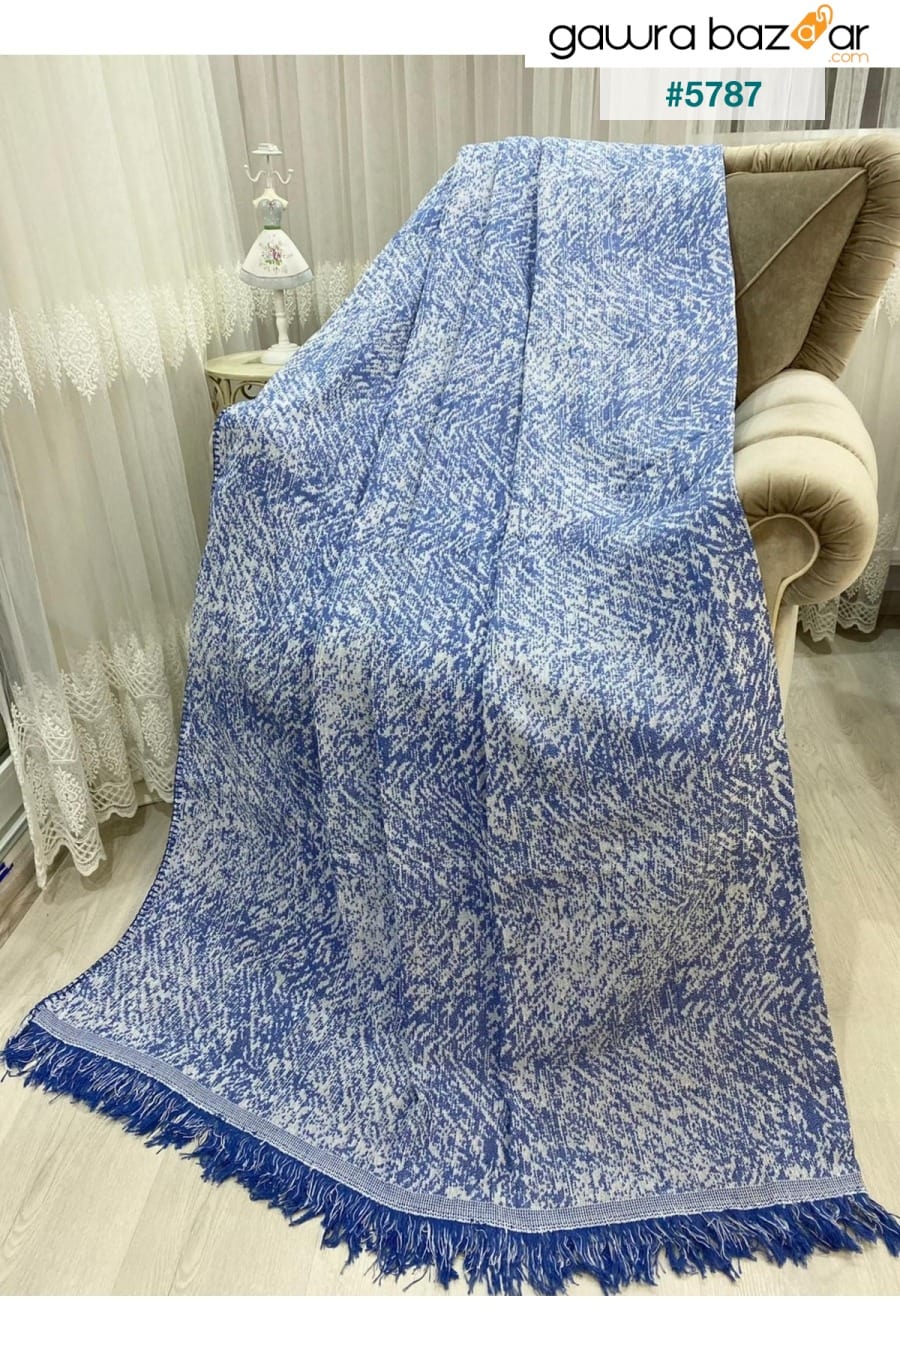 غطاء أريكة صوفا قطني فاخر 170x220 ساكس أزرق مزدوج الوجه مضاد للعرق مانع للانزلاق Özlü Home 0